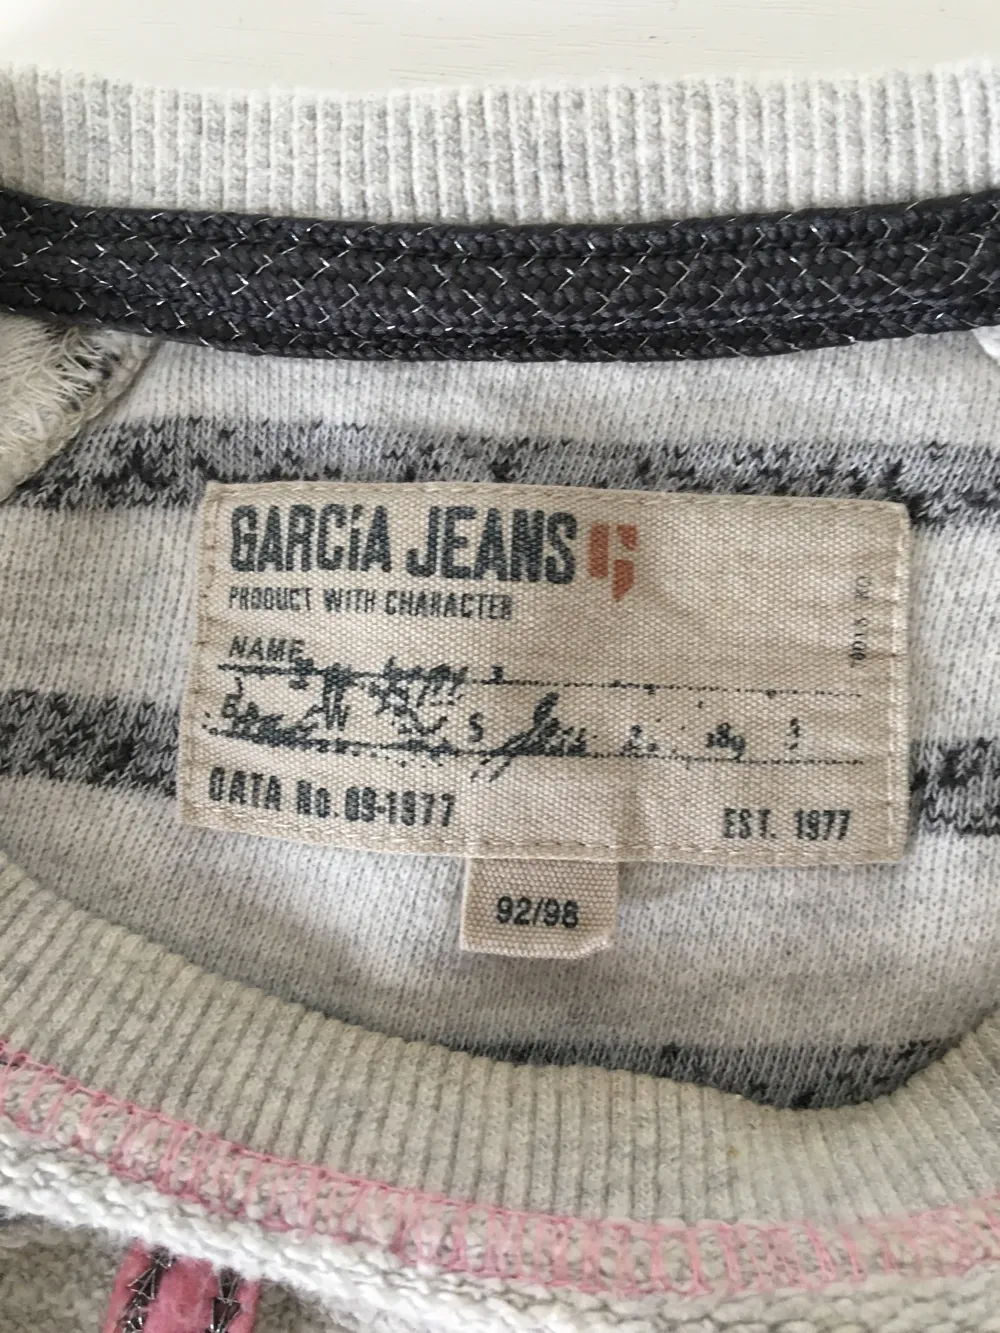 Køb Garcia jeans i 98 af på Reshopper Shop secondhand til børn, mor og bolig